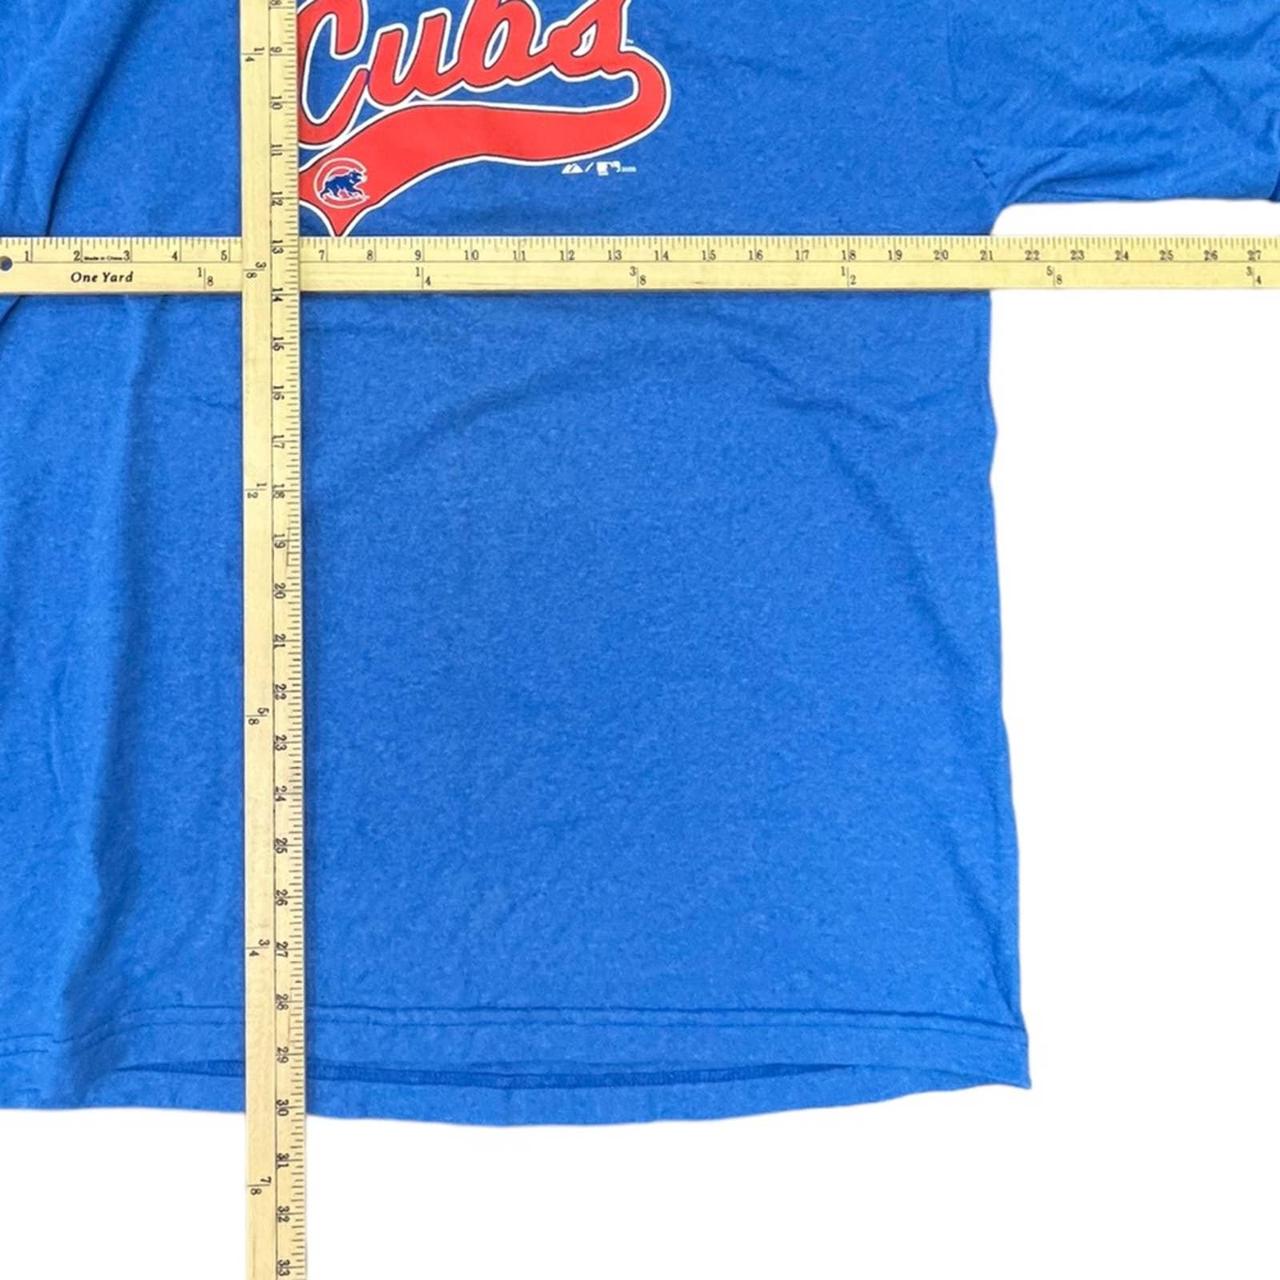 Vintage Chicago Cubs MLB Jersey Size S or Kids - Depop